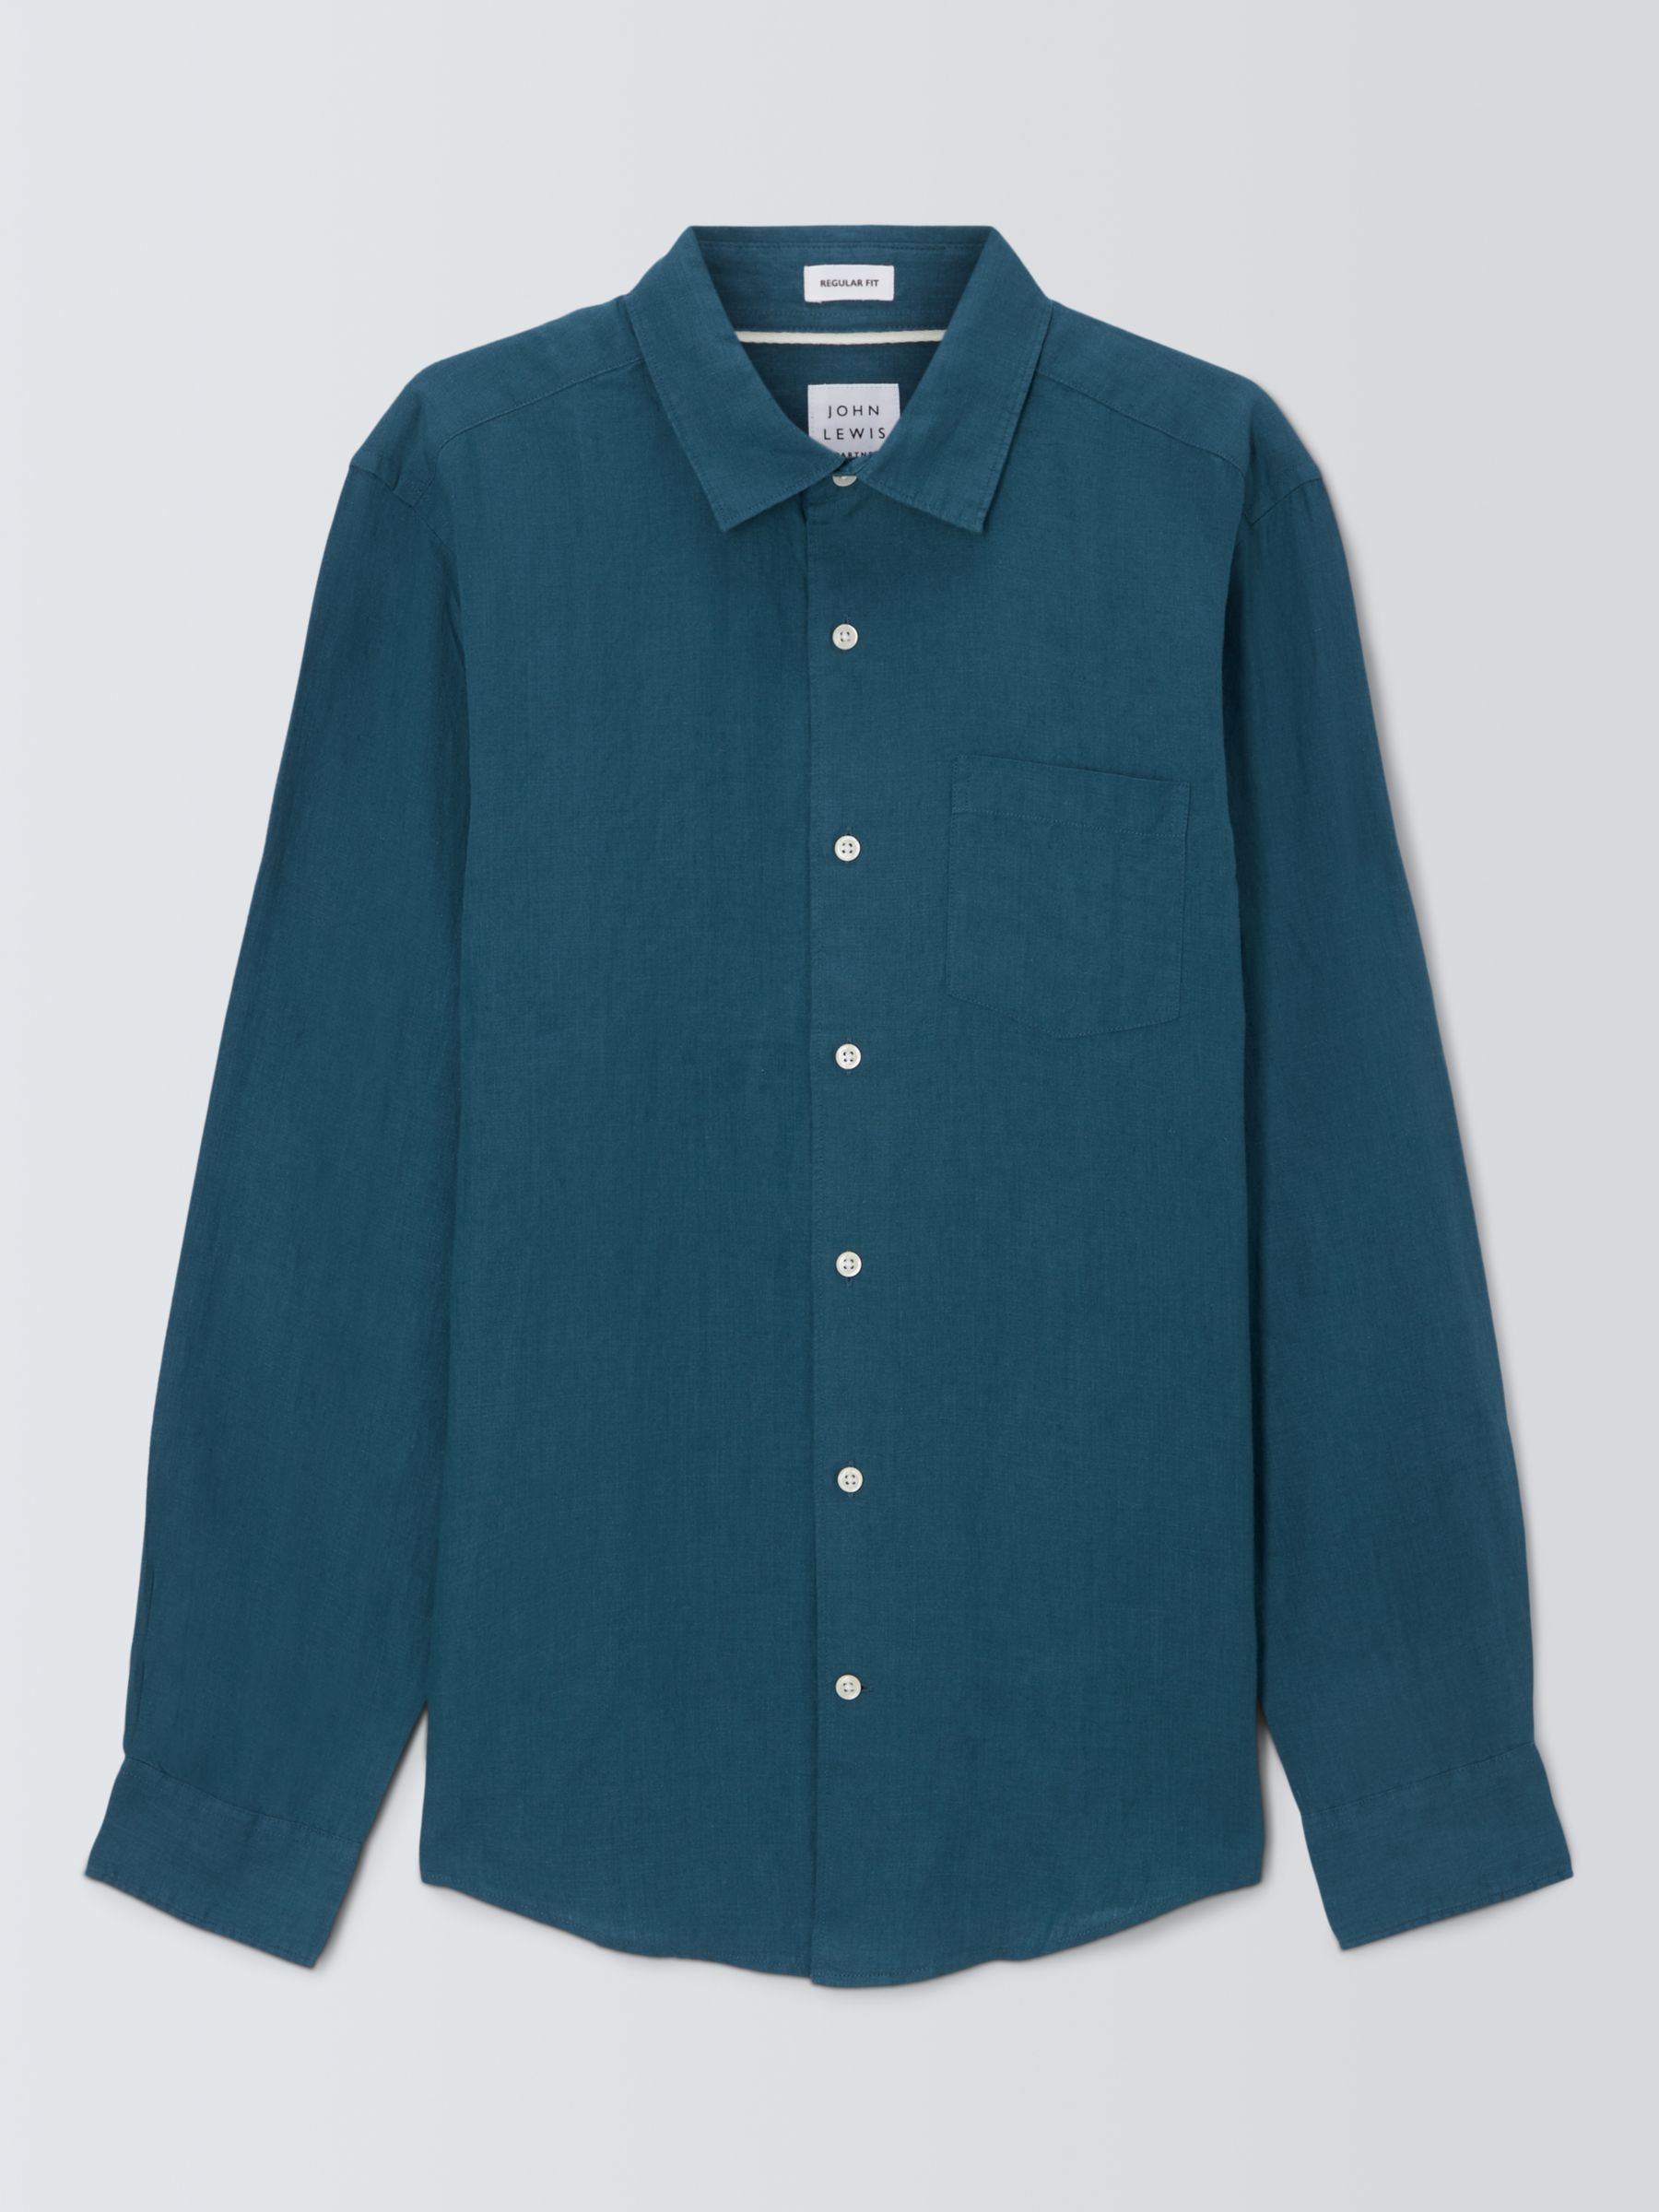 John Lewis Linen Long Sleeve Shirt, Mallard Blue, S